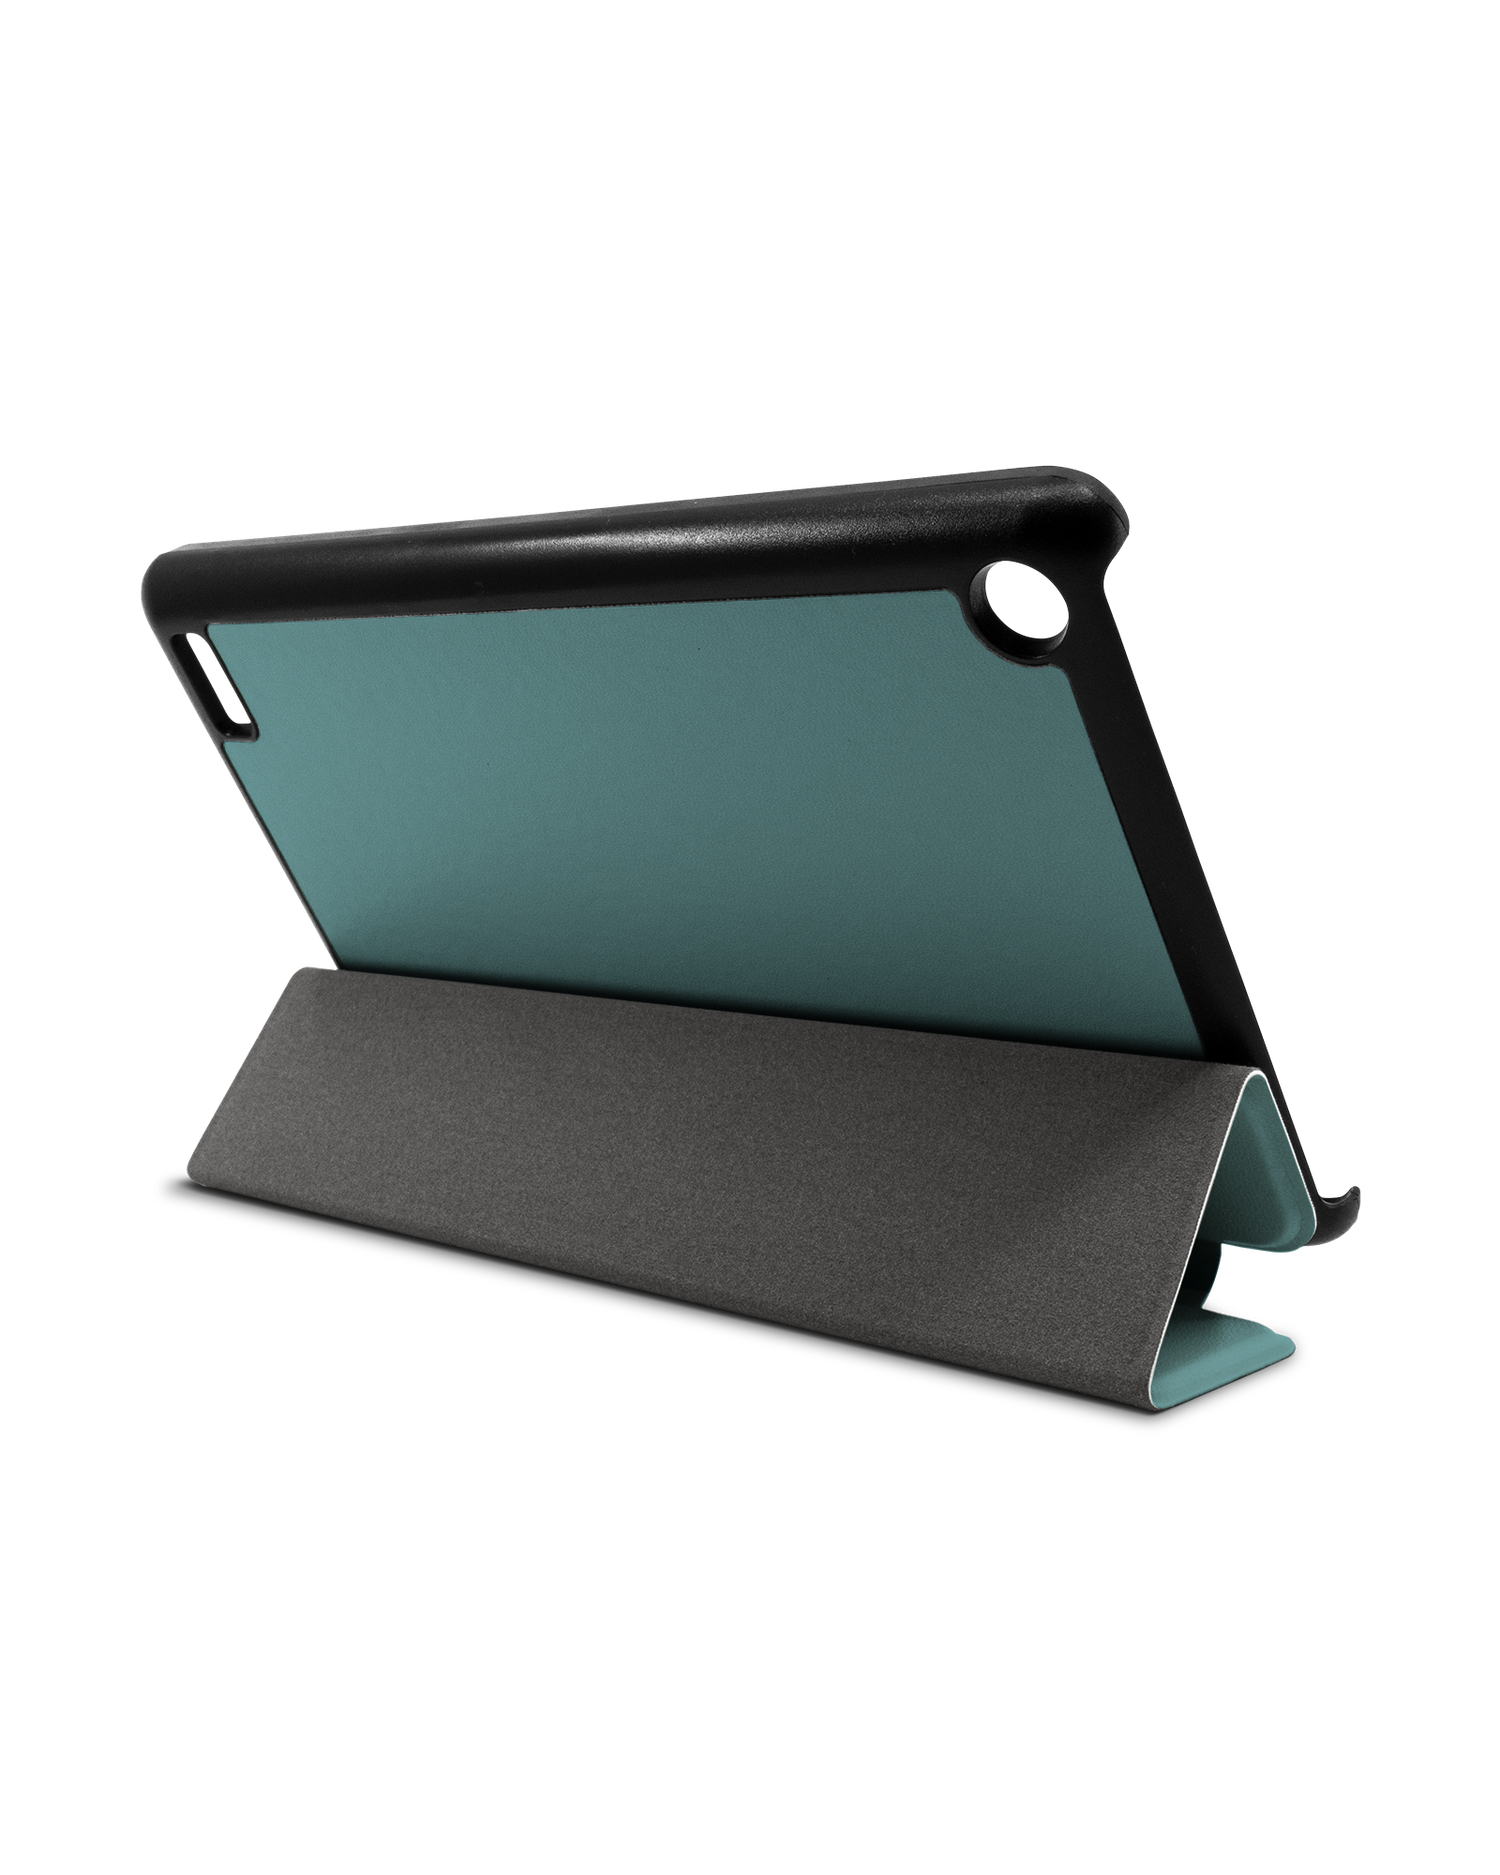 TURQUOISE Tablet Smart Case für Amazon Fire 7: Aufgestellt im Querformat